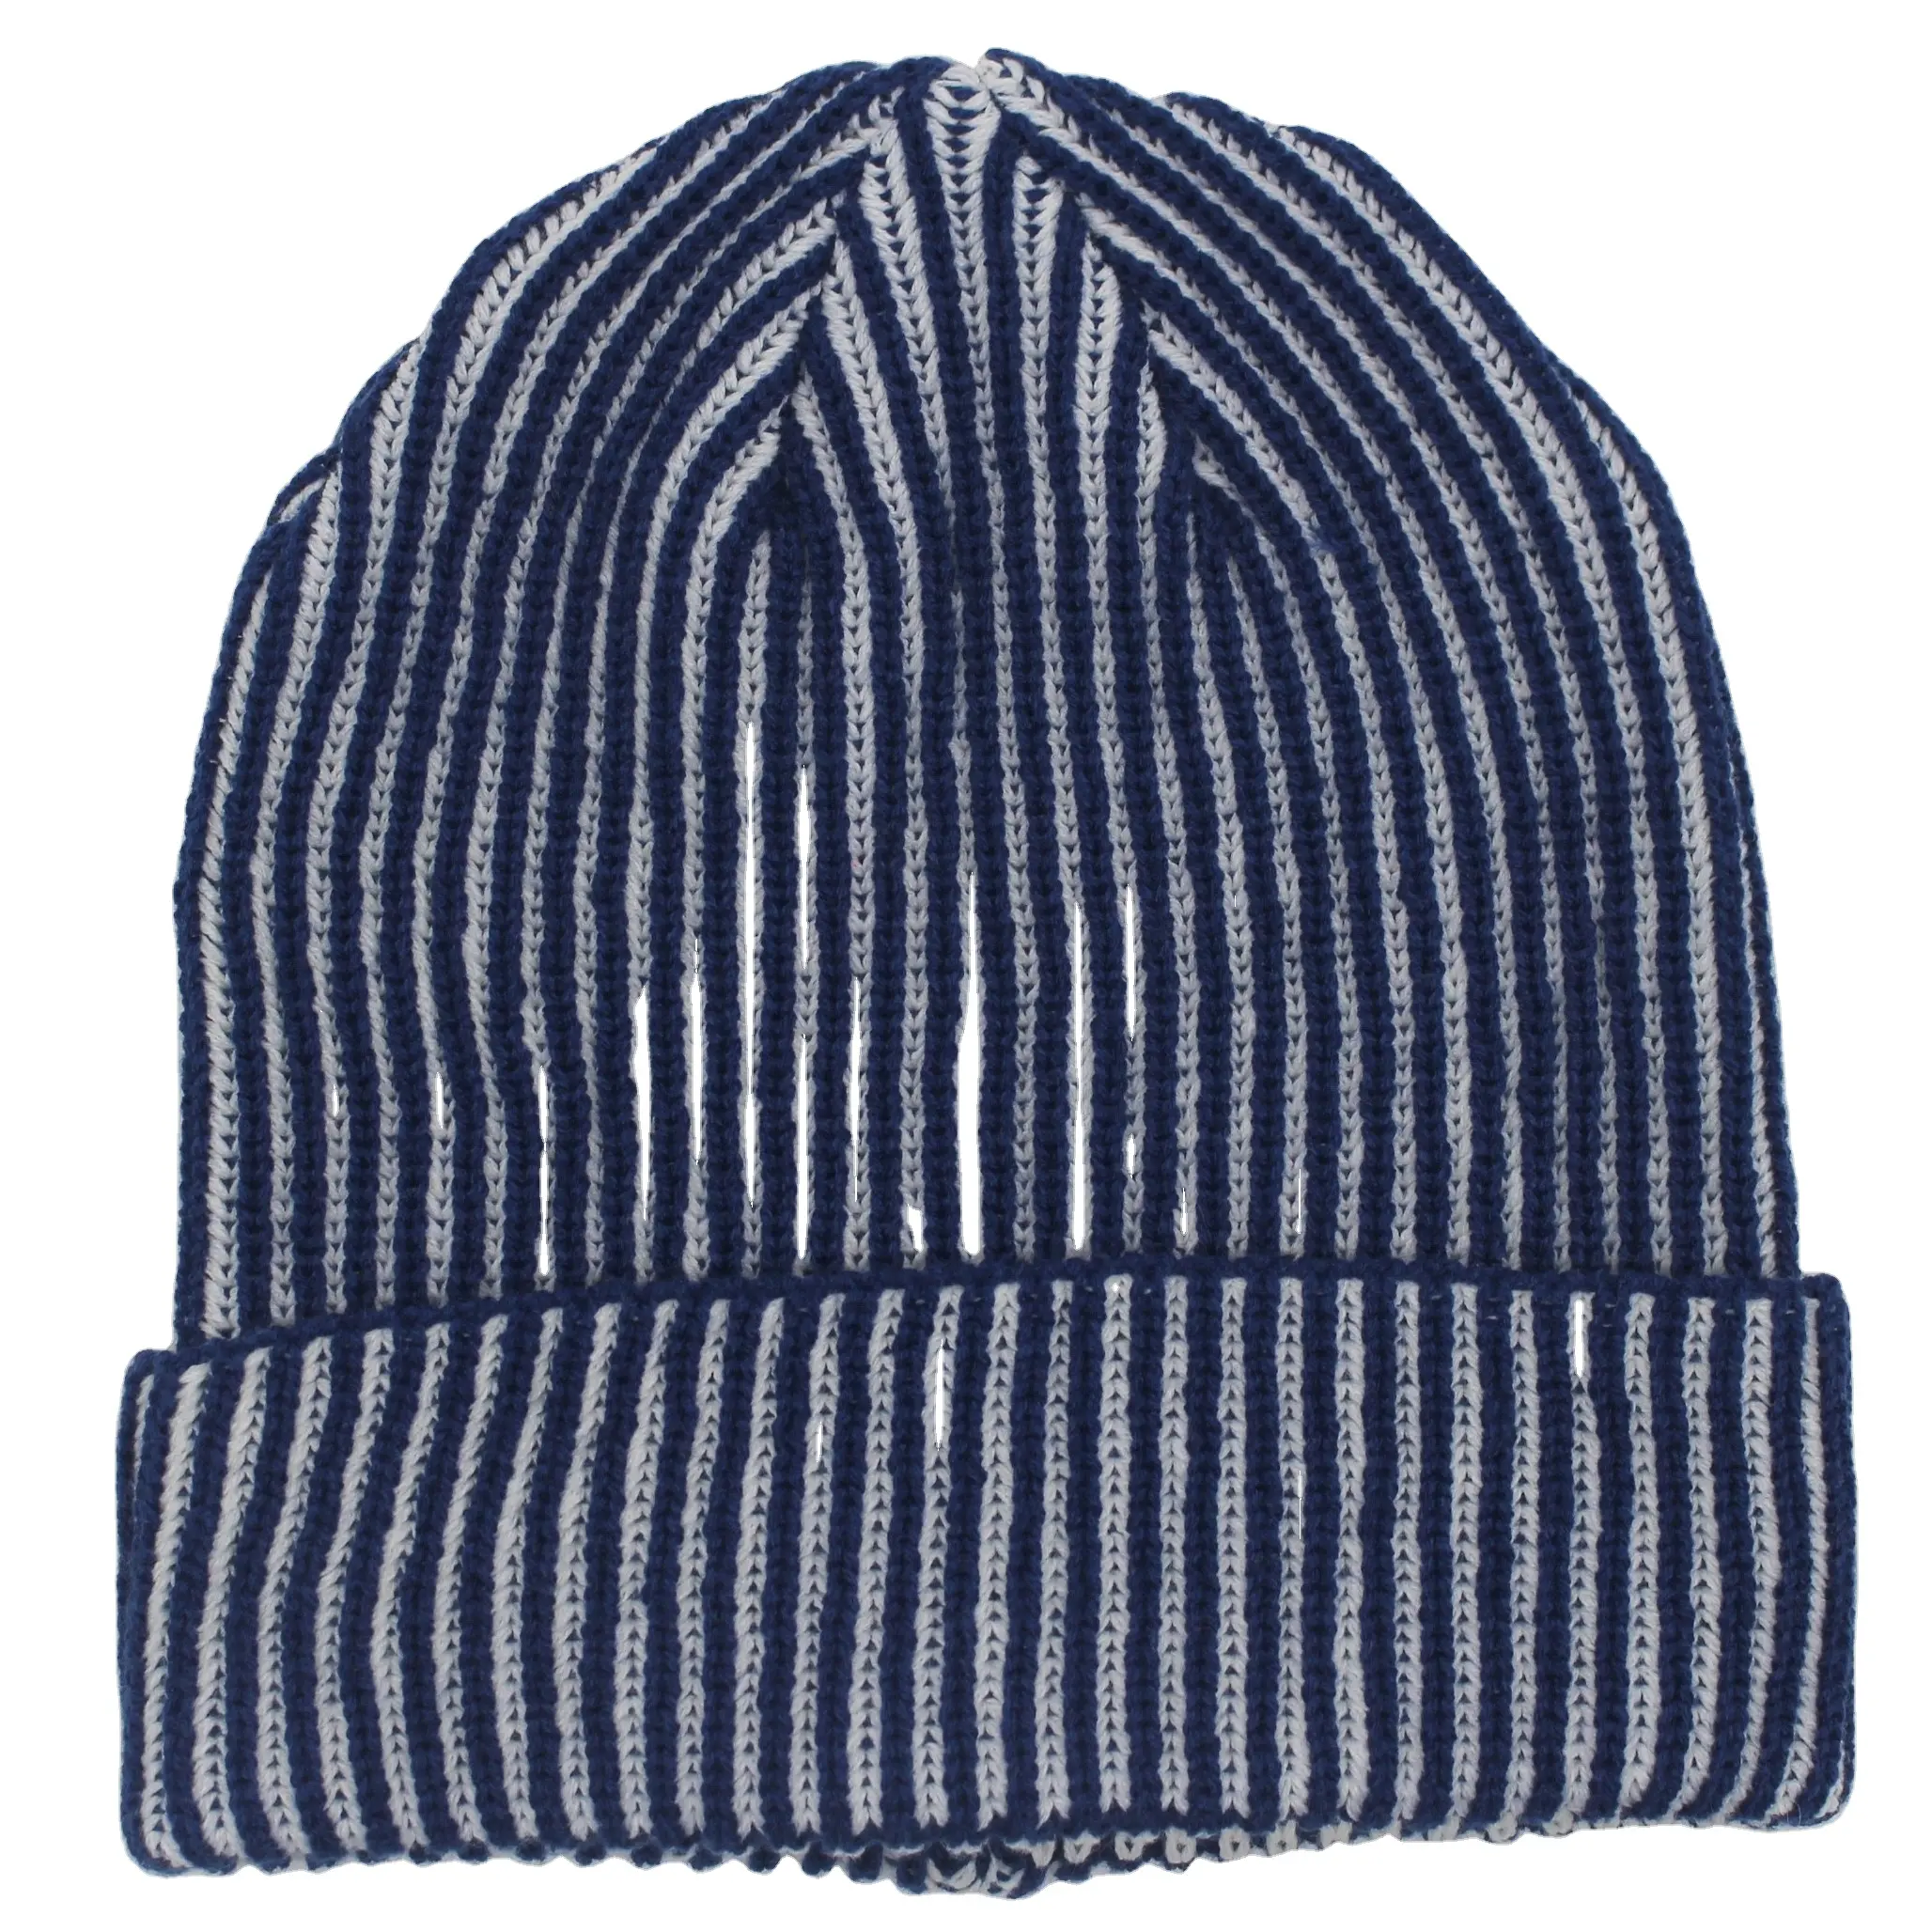 Toptan kış özel logo örme bere çeşitli renk şapka